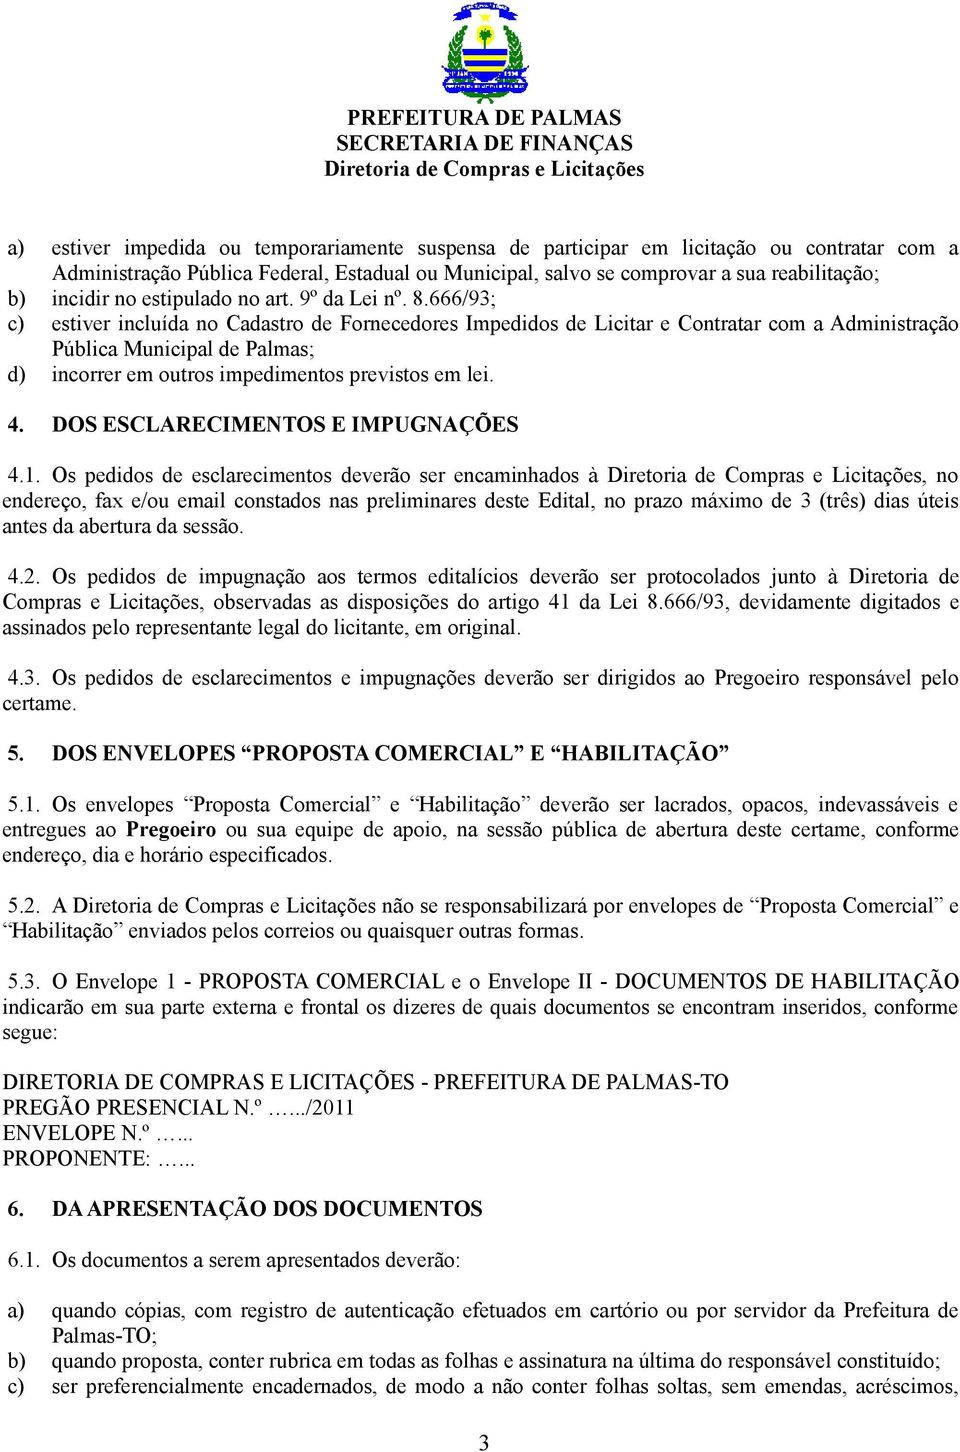 666/93; c) estiver incluída no Cadastro de Fornecedores Impedidos de Licitar e Contratar com a Administração Pública Municipal de Palmas; d) incorrer em outros impedimentos previstos em lei. 4.